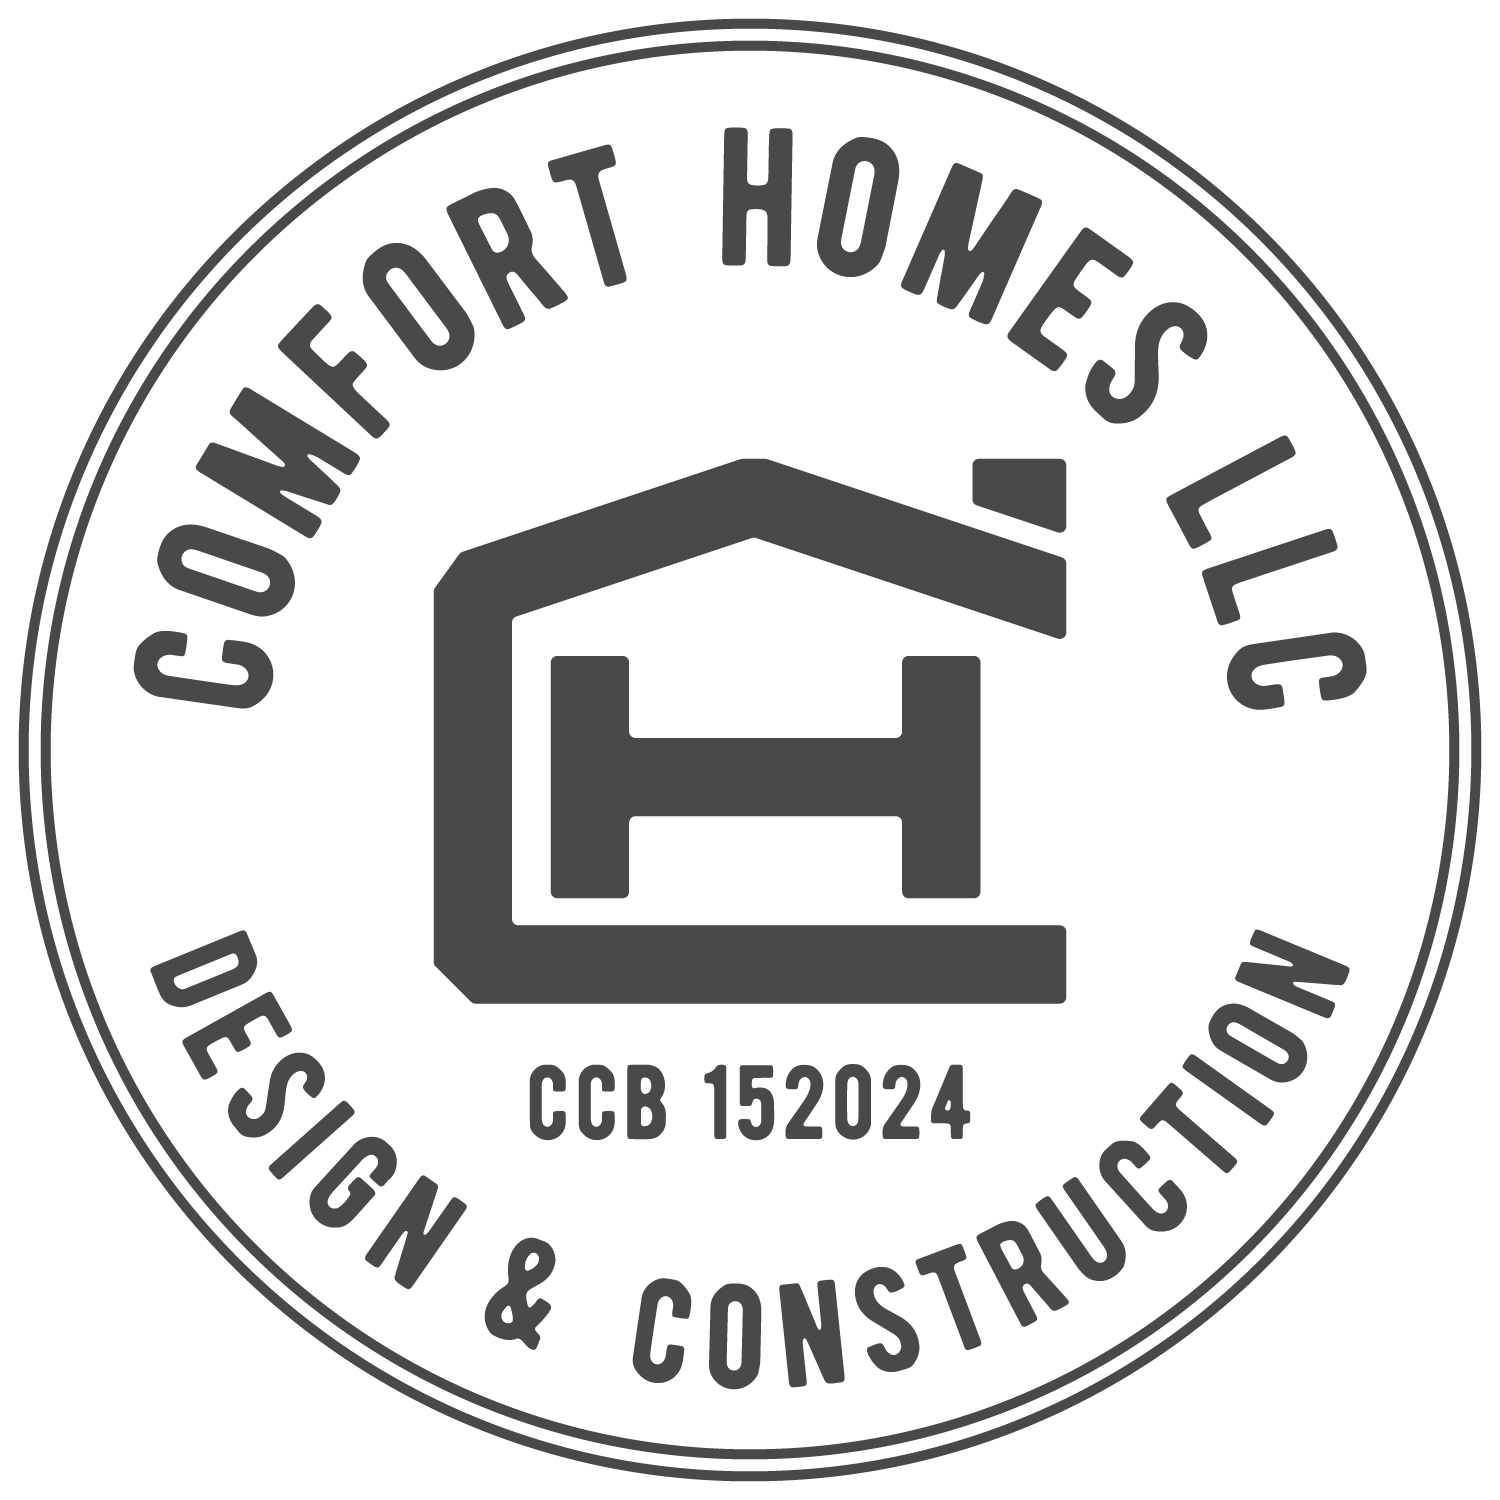 Comfort Homes, LLC